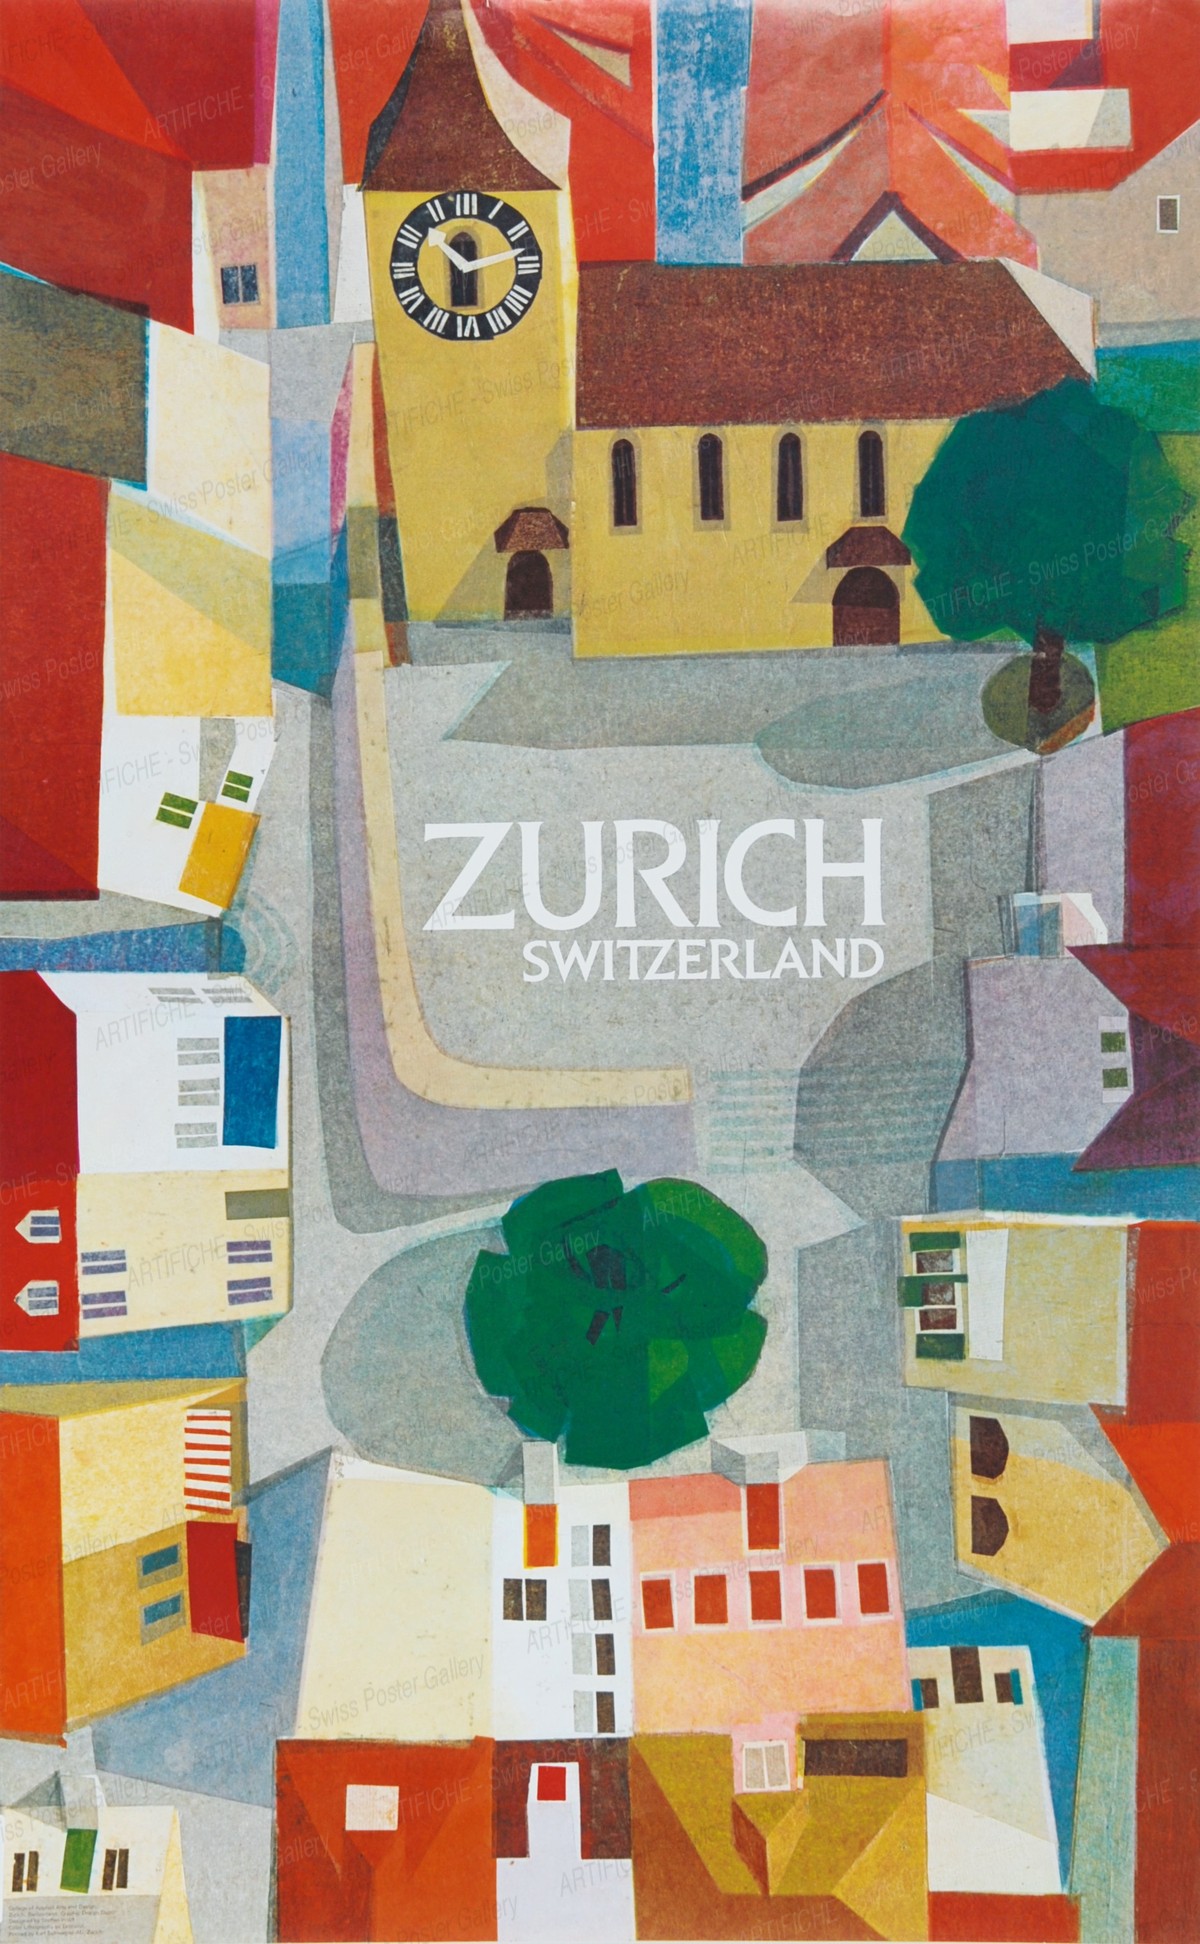 ZURICH Switzerland, Steffen Wolff